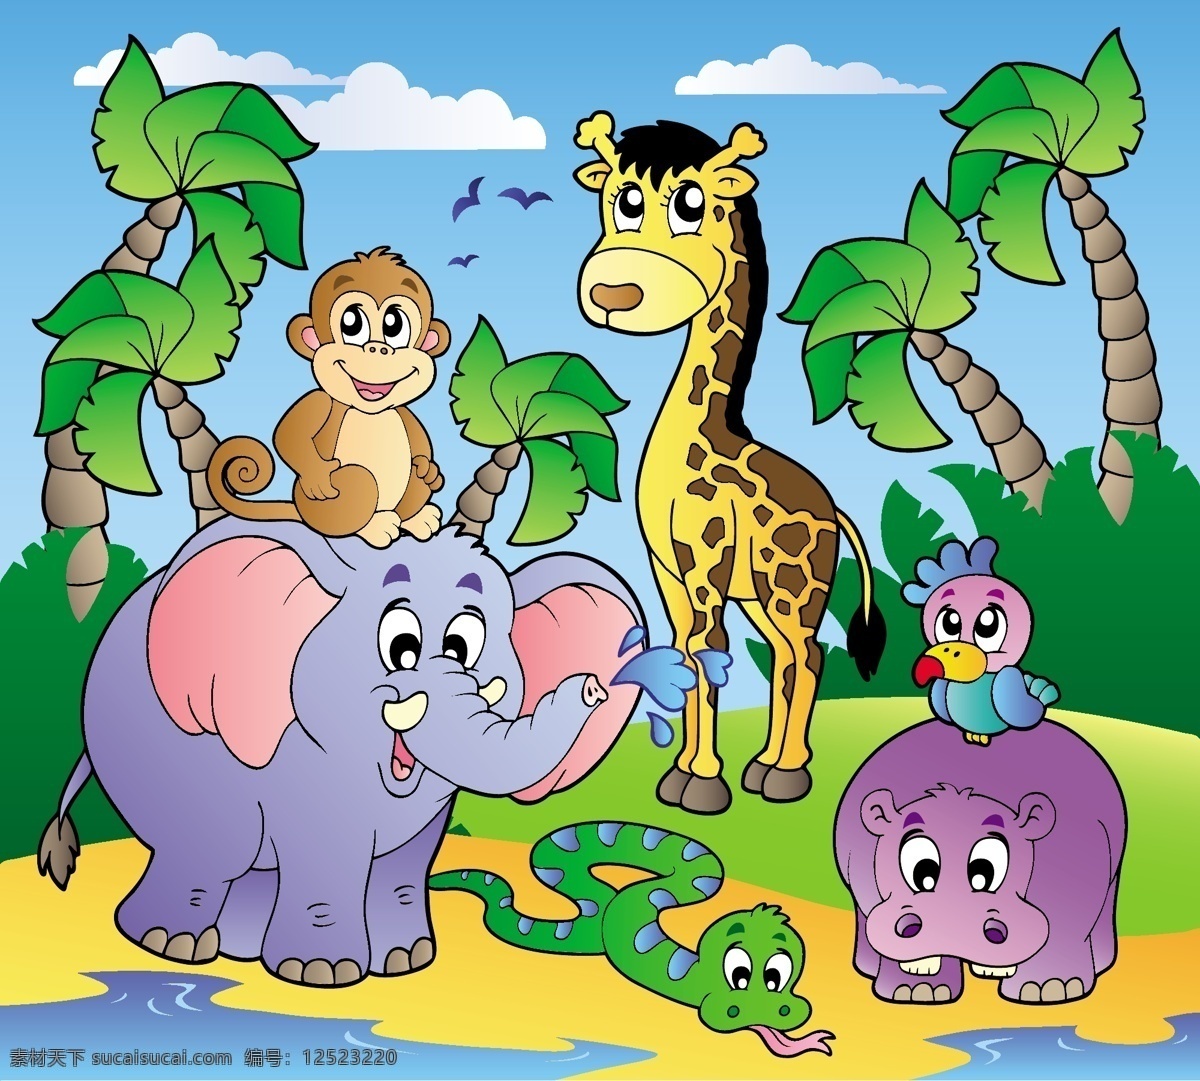 可爱 卡通 动物园 大象 猴子 河马 巨蟒 小鸟 飞鸟 草地 绿地 树木 蓝天 白云 非洲 动物 野生动物园 风景 矢量素材 自然风景 自然景观 矢量